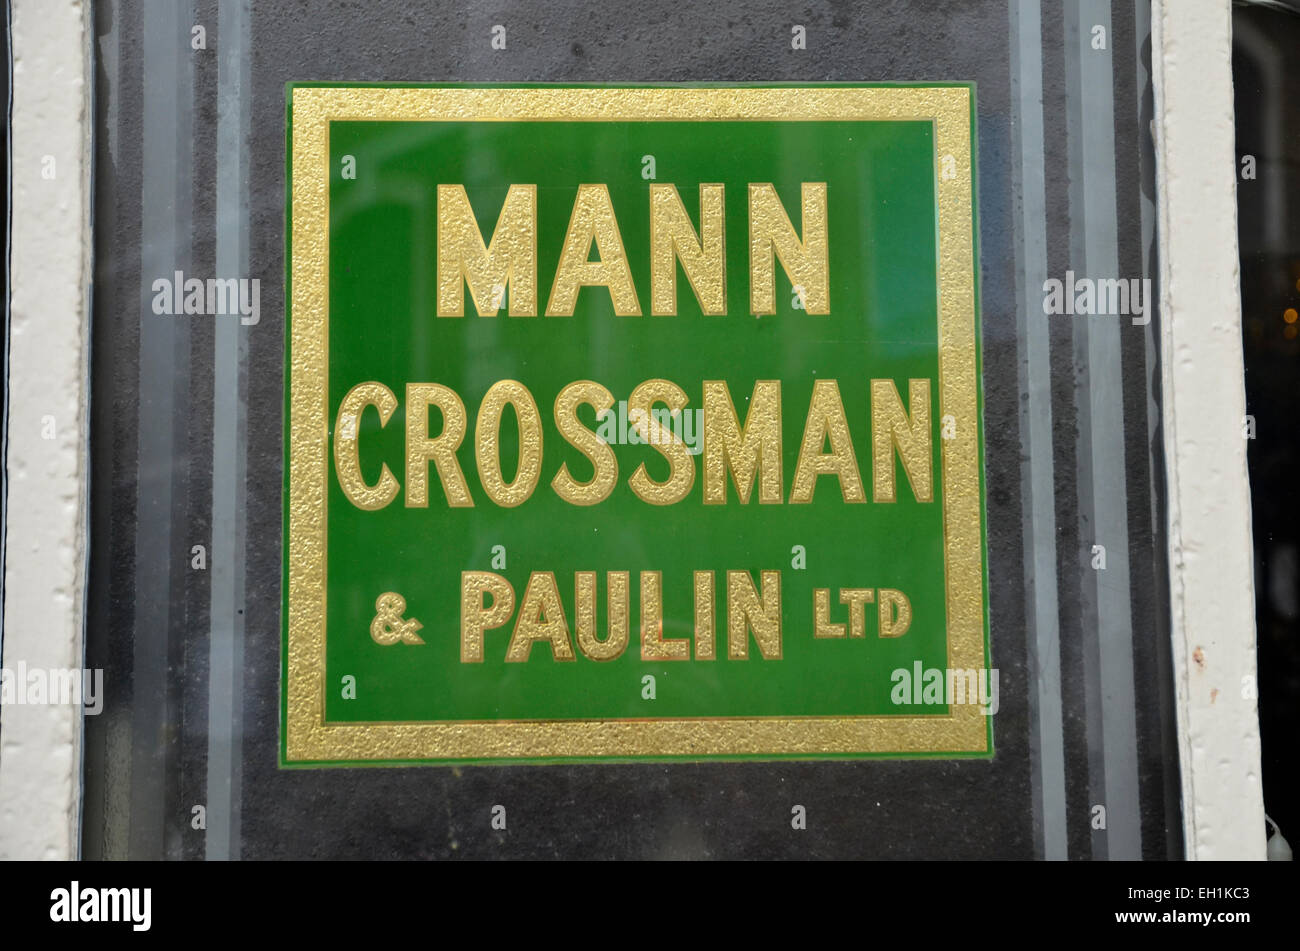 Ein Alter Mann Crossman und Paulin unterzeichnen in einem Pub-Fenster in Clerkenwell, London Stockfoto